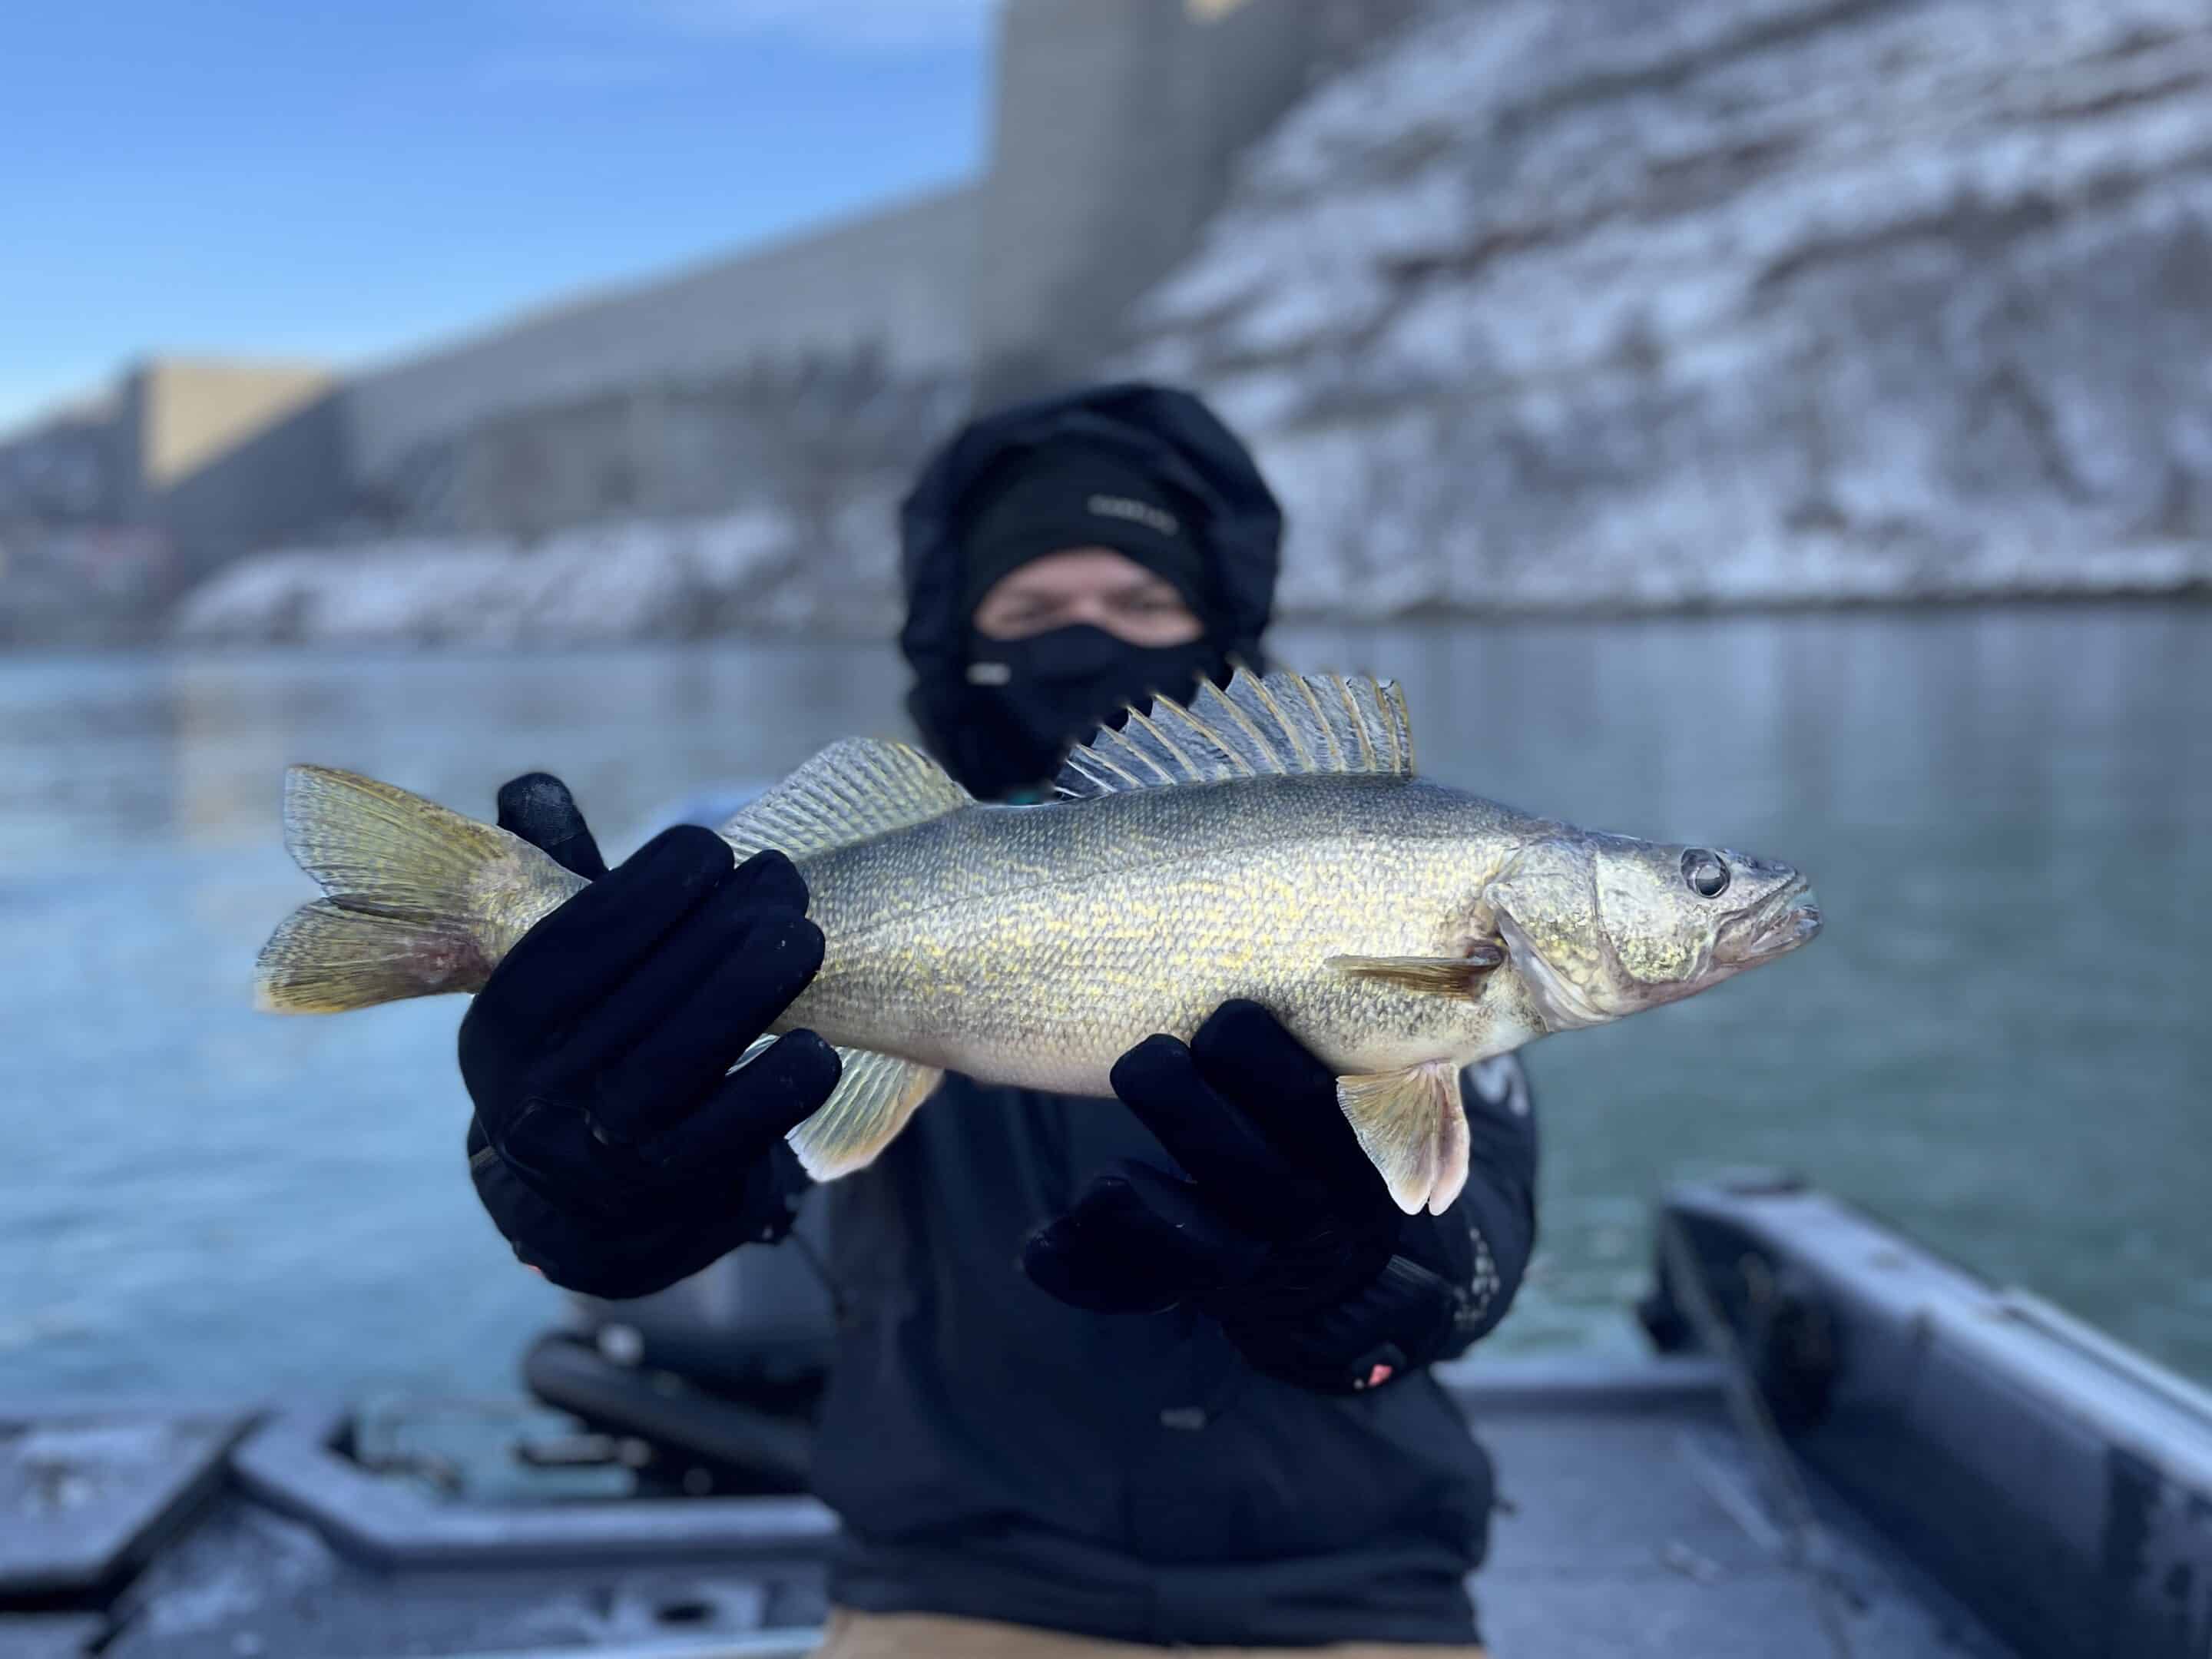 Buffalo NY Fishing report